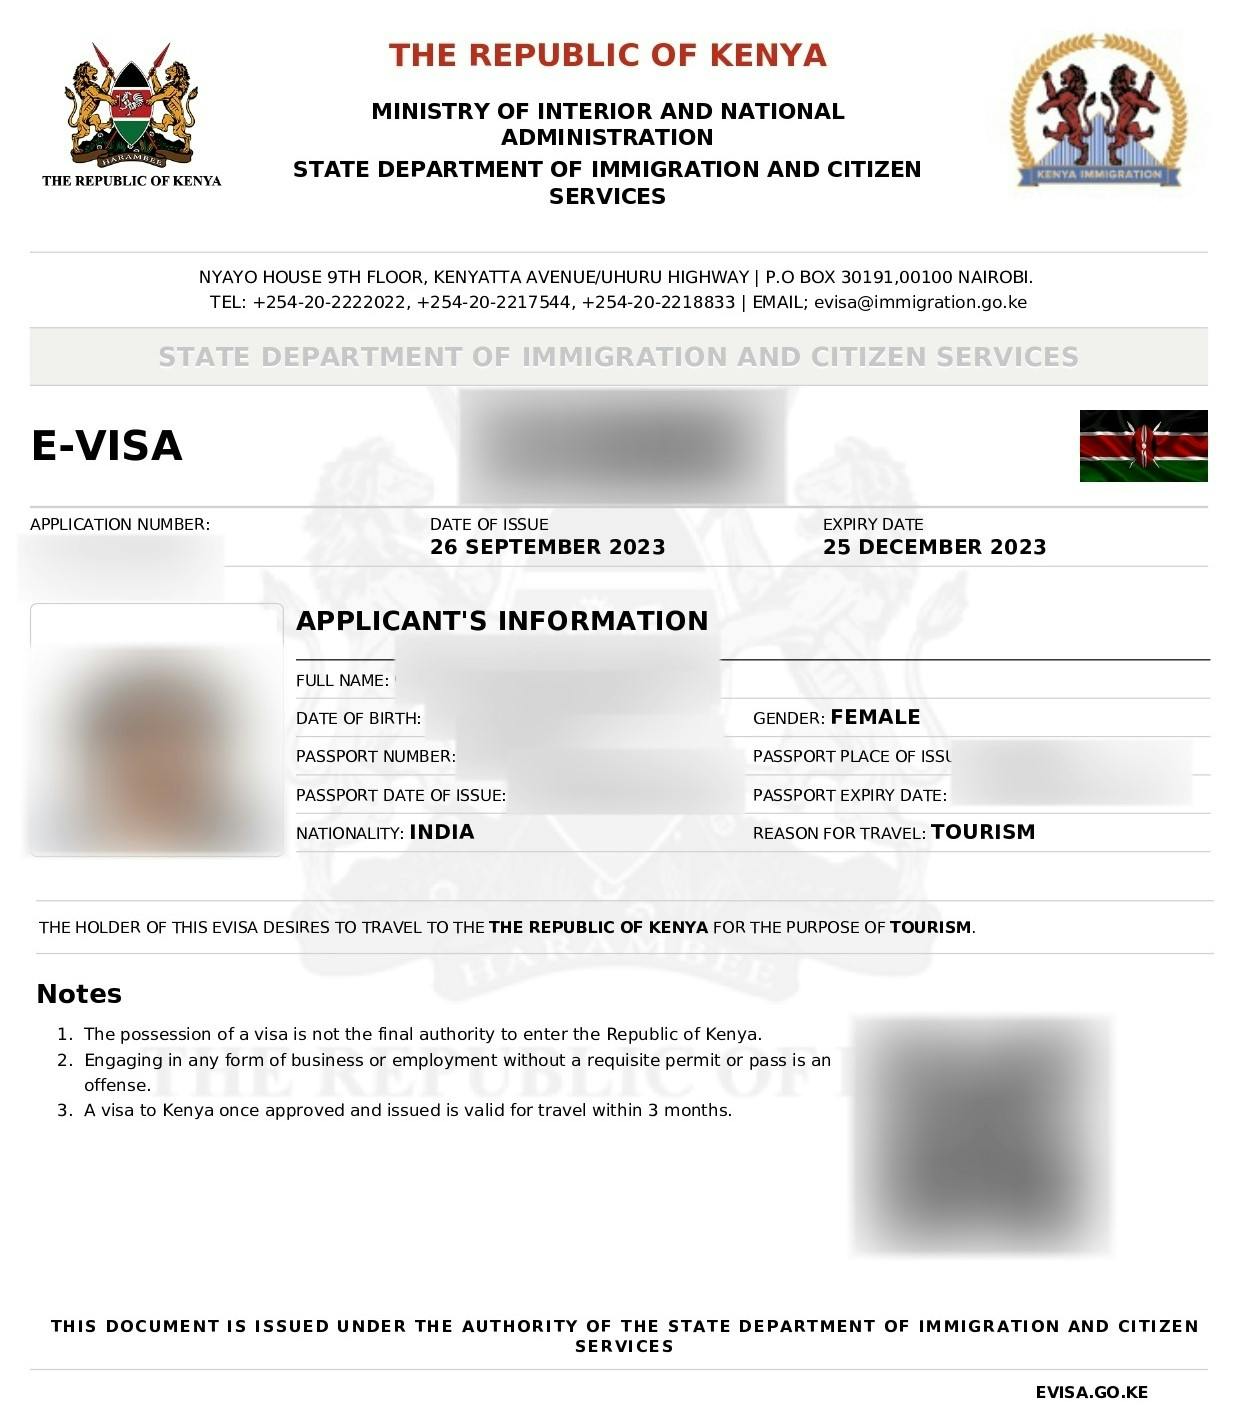 A sample of the Kenya e-visa.